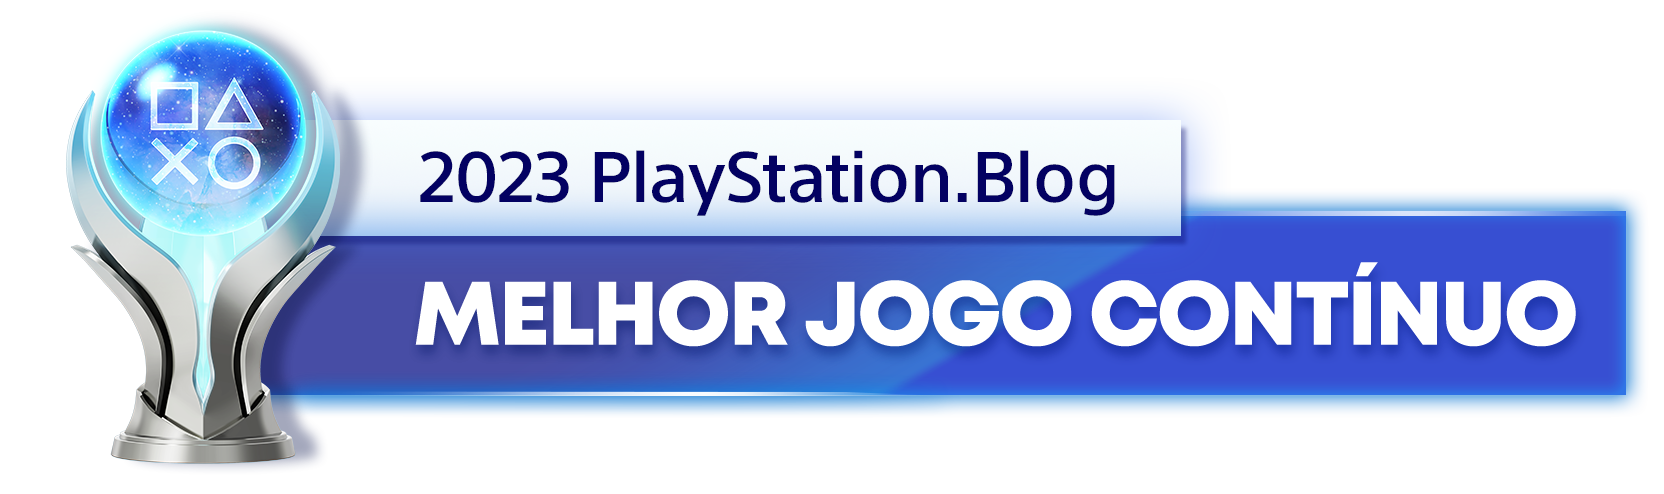  "Troféu de Platina para o vencedor da categoria Melhor Jogo Contínuo de 2023 do PlayStation Blog"